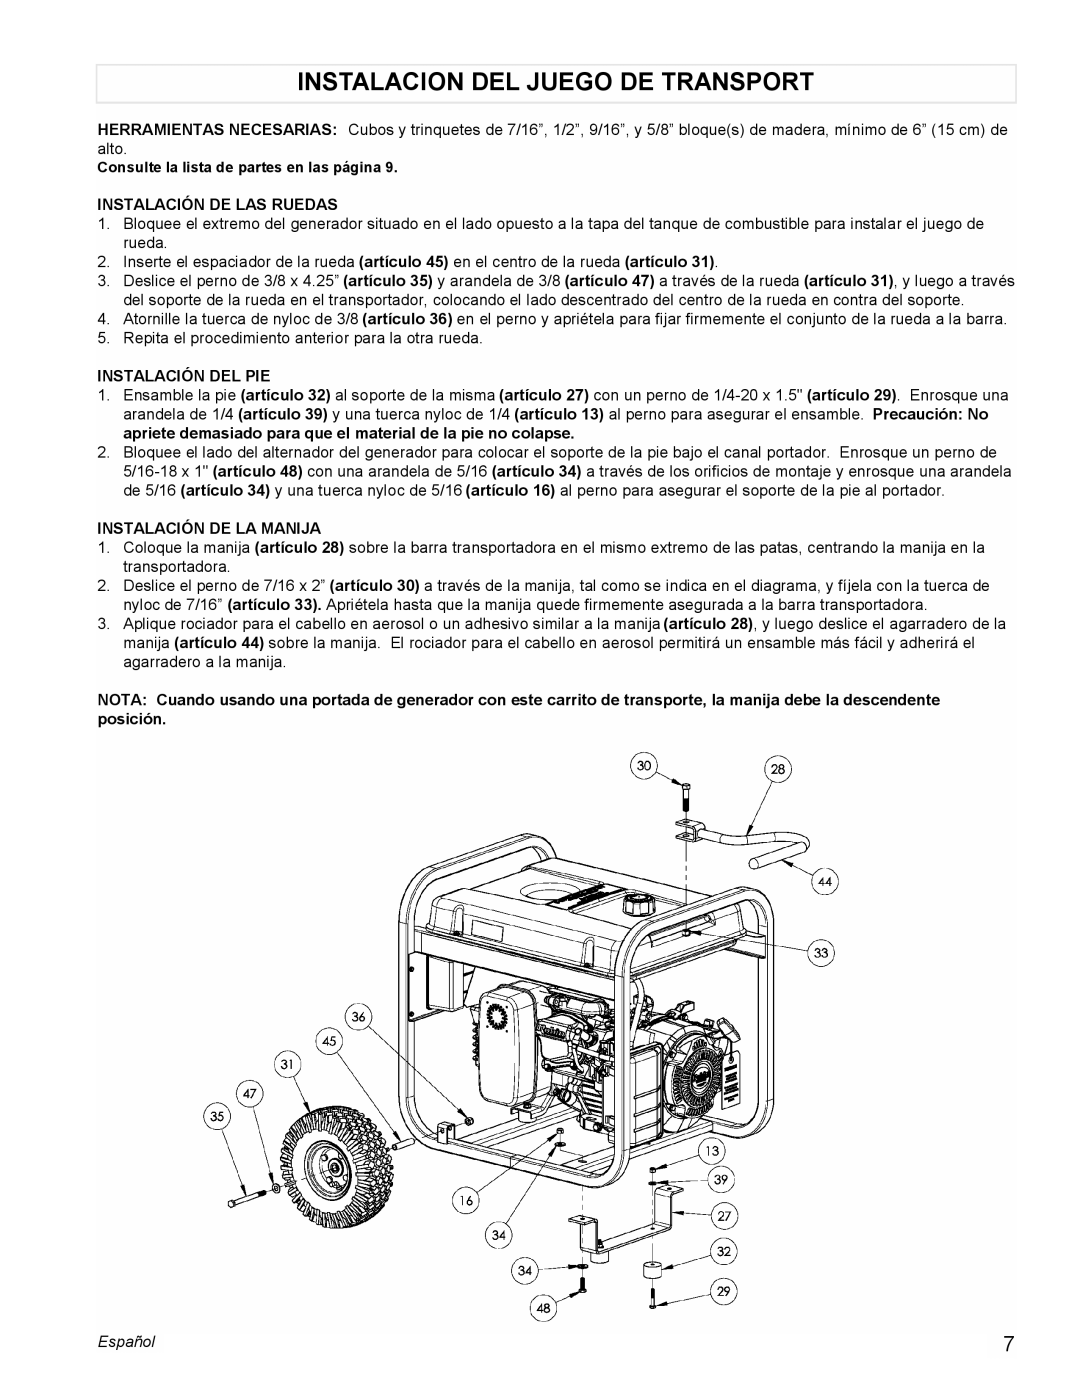 Powermate PM0435250 manual Instalacion Del Juego De Transport, Instalación De Las Ruedas, Instalación Del Pie, Español 